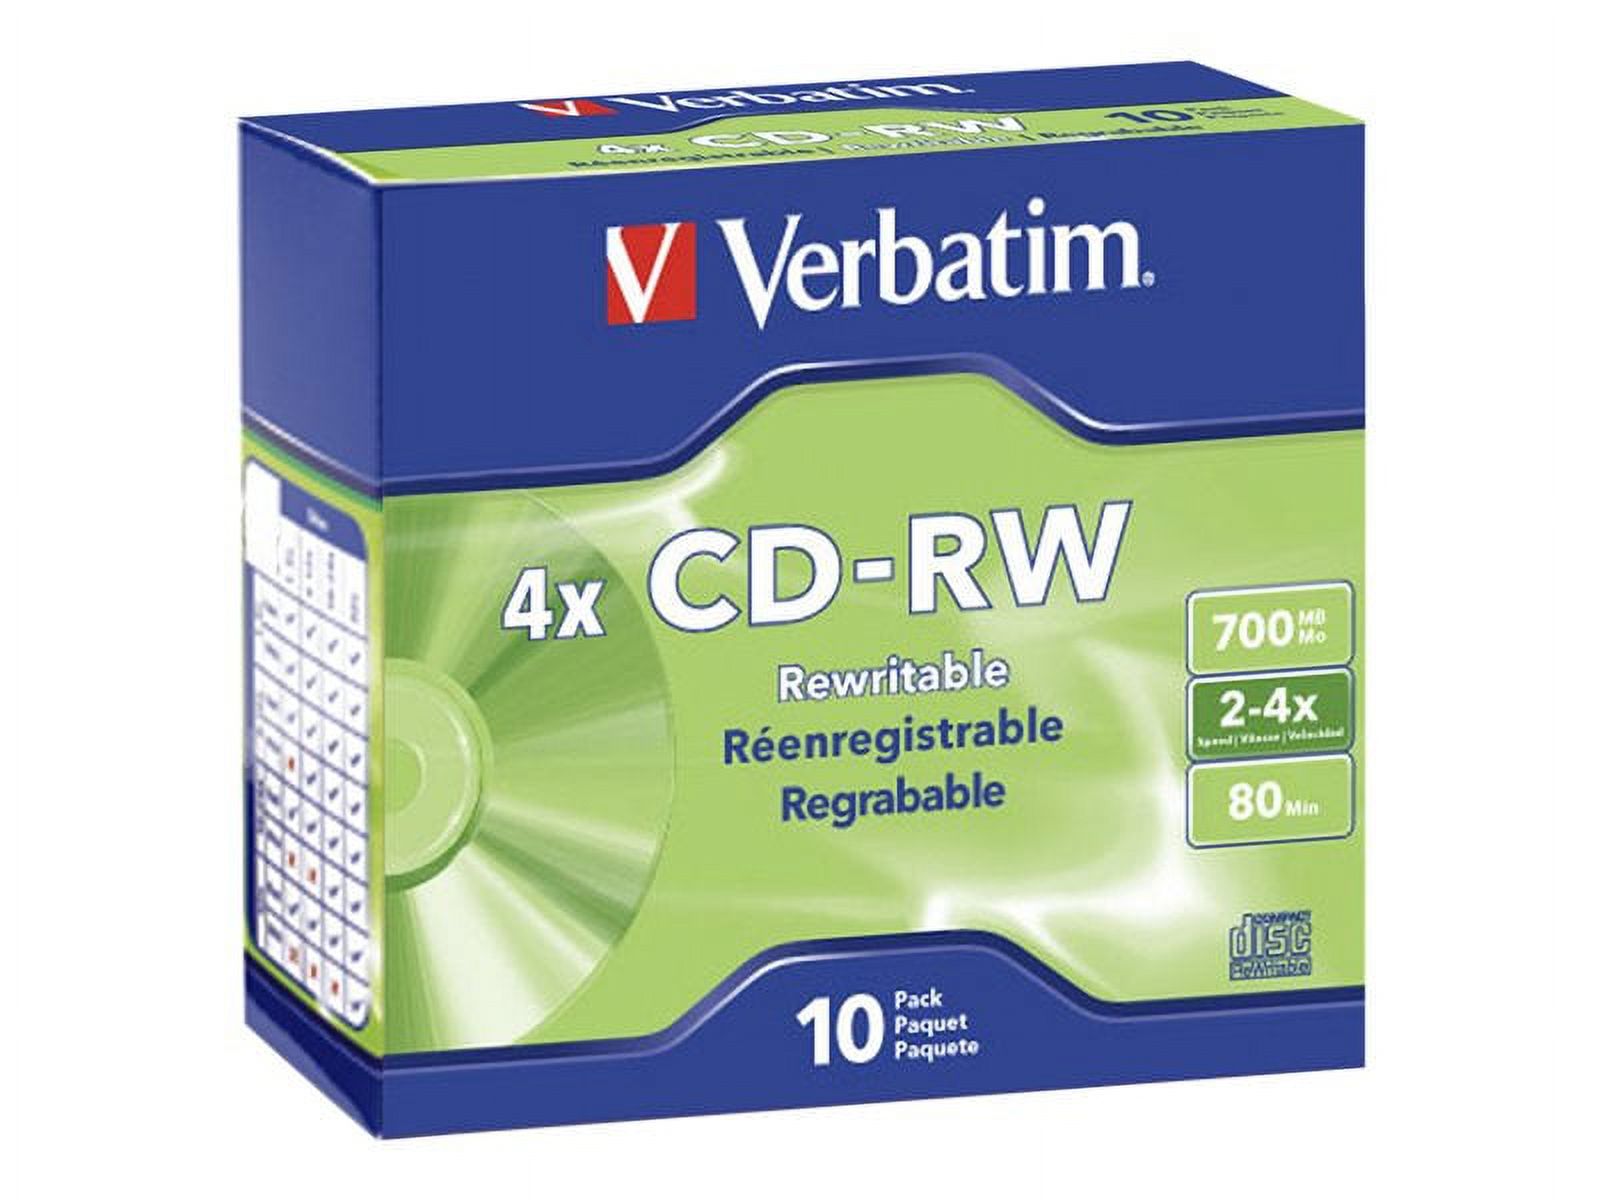 Verbatim cd-rw brand slv 10pk 700mb/4x slim case - image 1 of 2